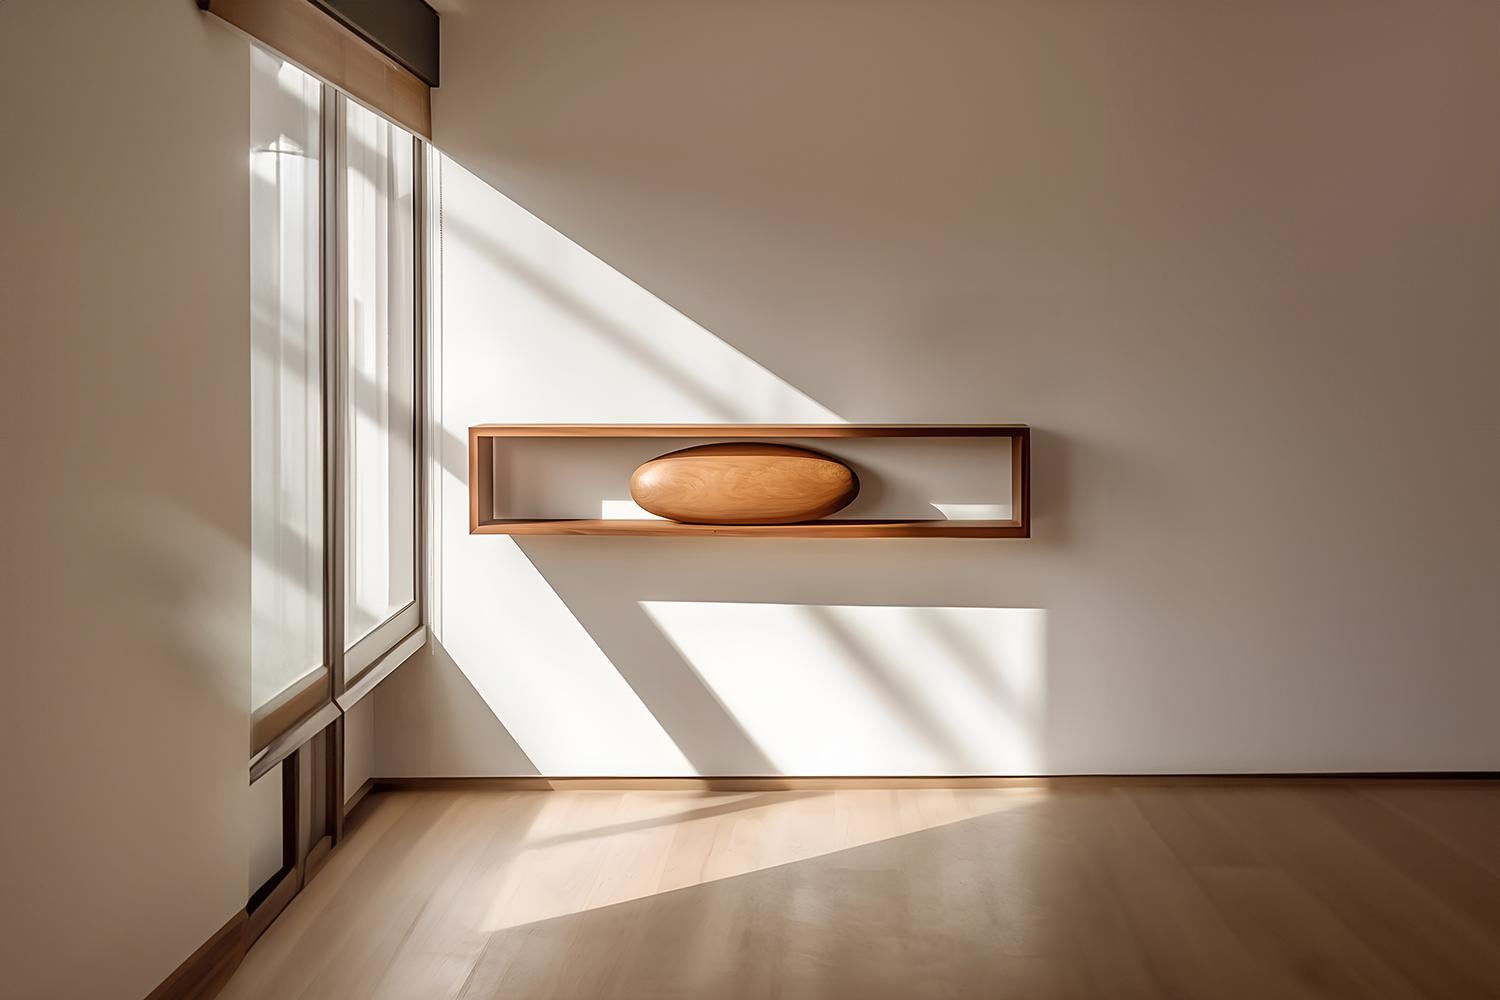 Grande étagère flottante rectangulaire avec un galet sculptural en bois, Sereno by Joel Escalona

-

Que se passe-t-il lorsque la pratique devient de l'art ?
Que se passe-t-il lorsque l'ornementation prend de l'importance ?

Telles sont les